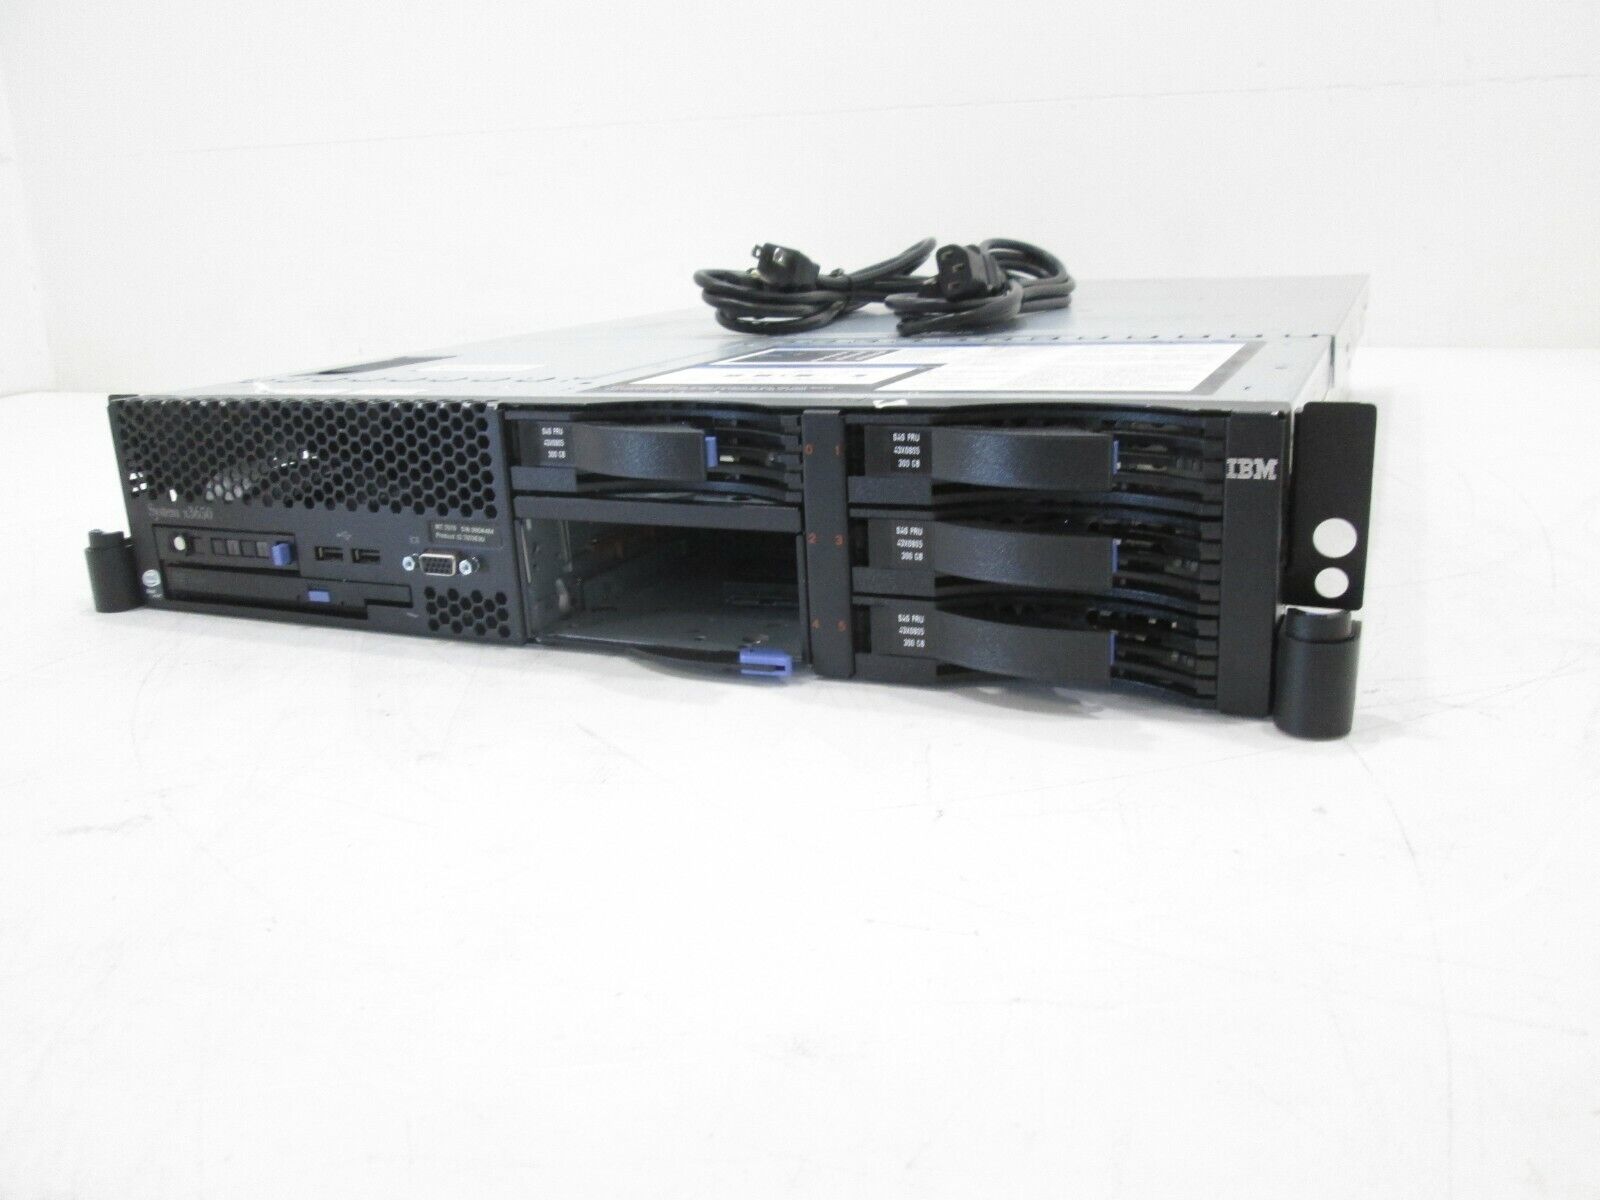 IBM 7979-AC1 X3650 CTO CHASSIS 2U SERVER 1x E5205 1.86 GHZ, 4GB RAM, 4x 300GB HD